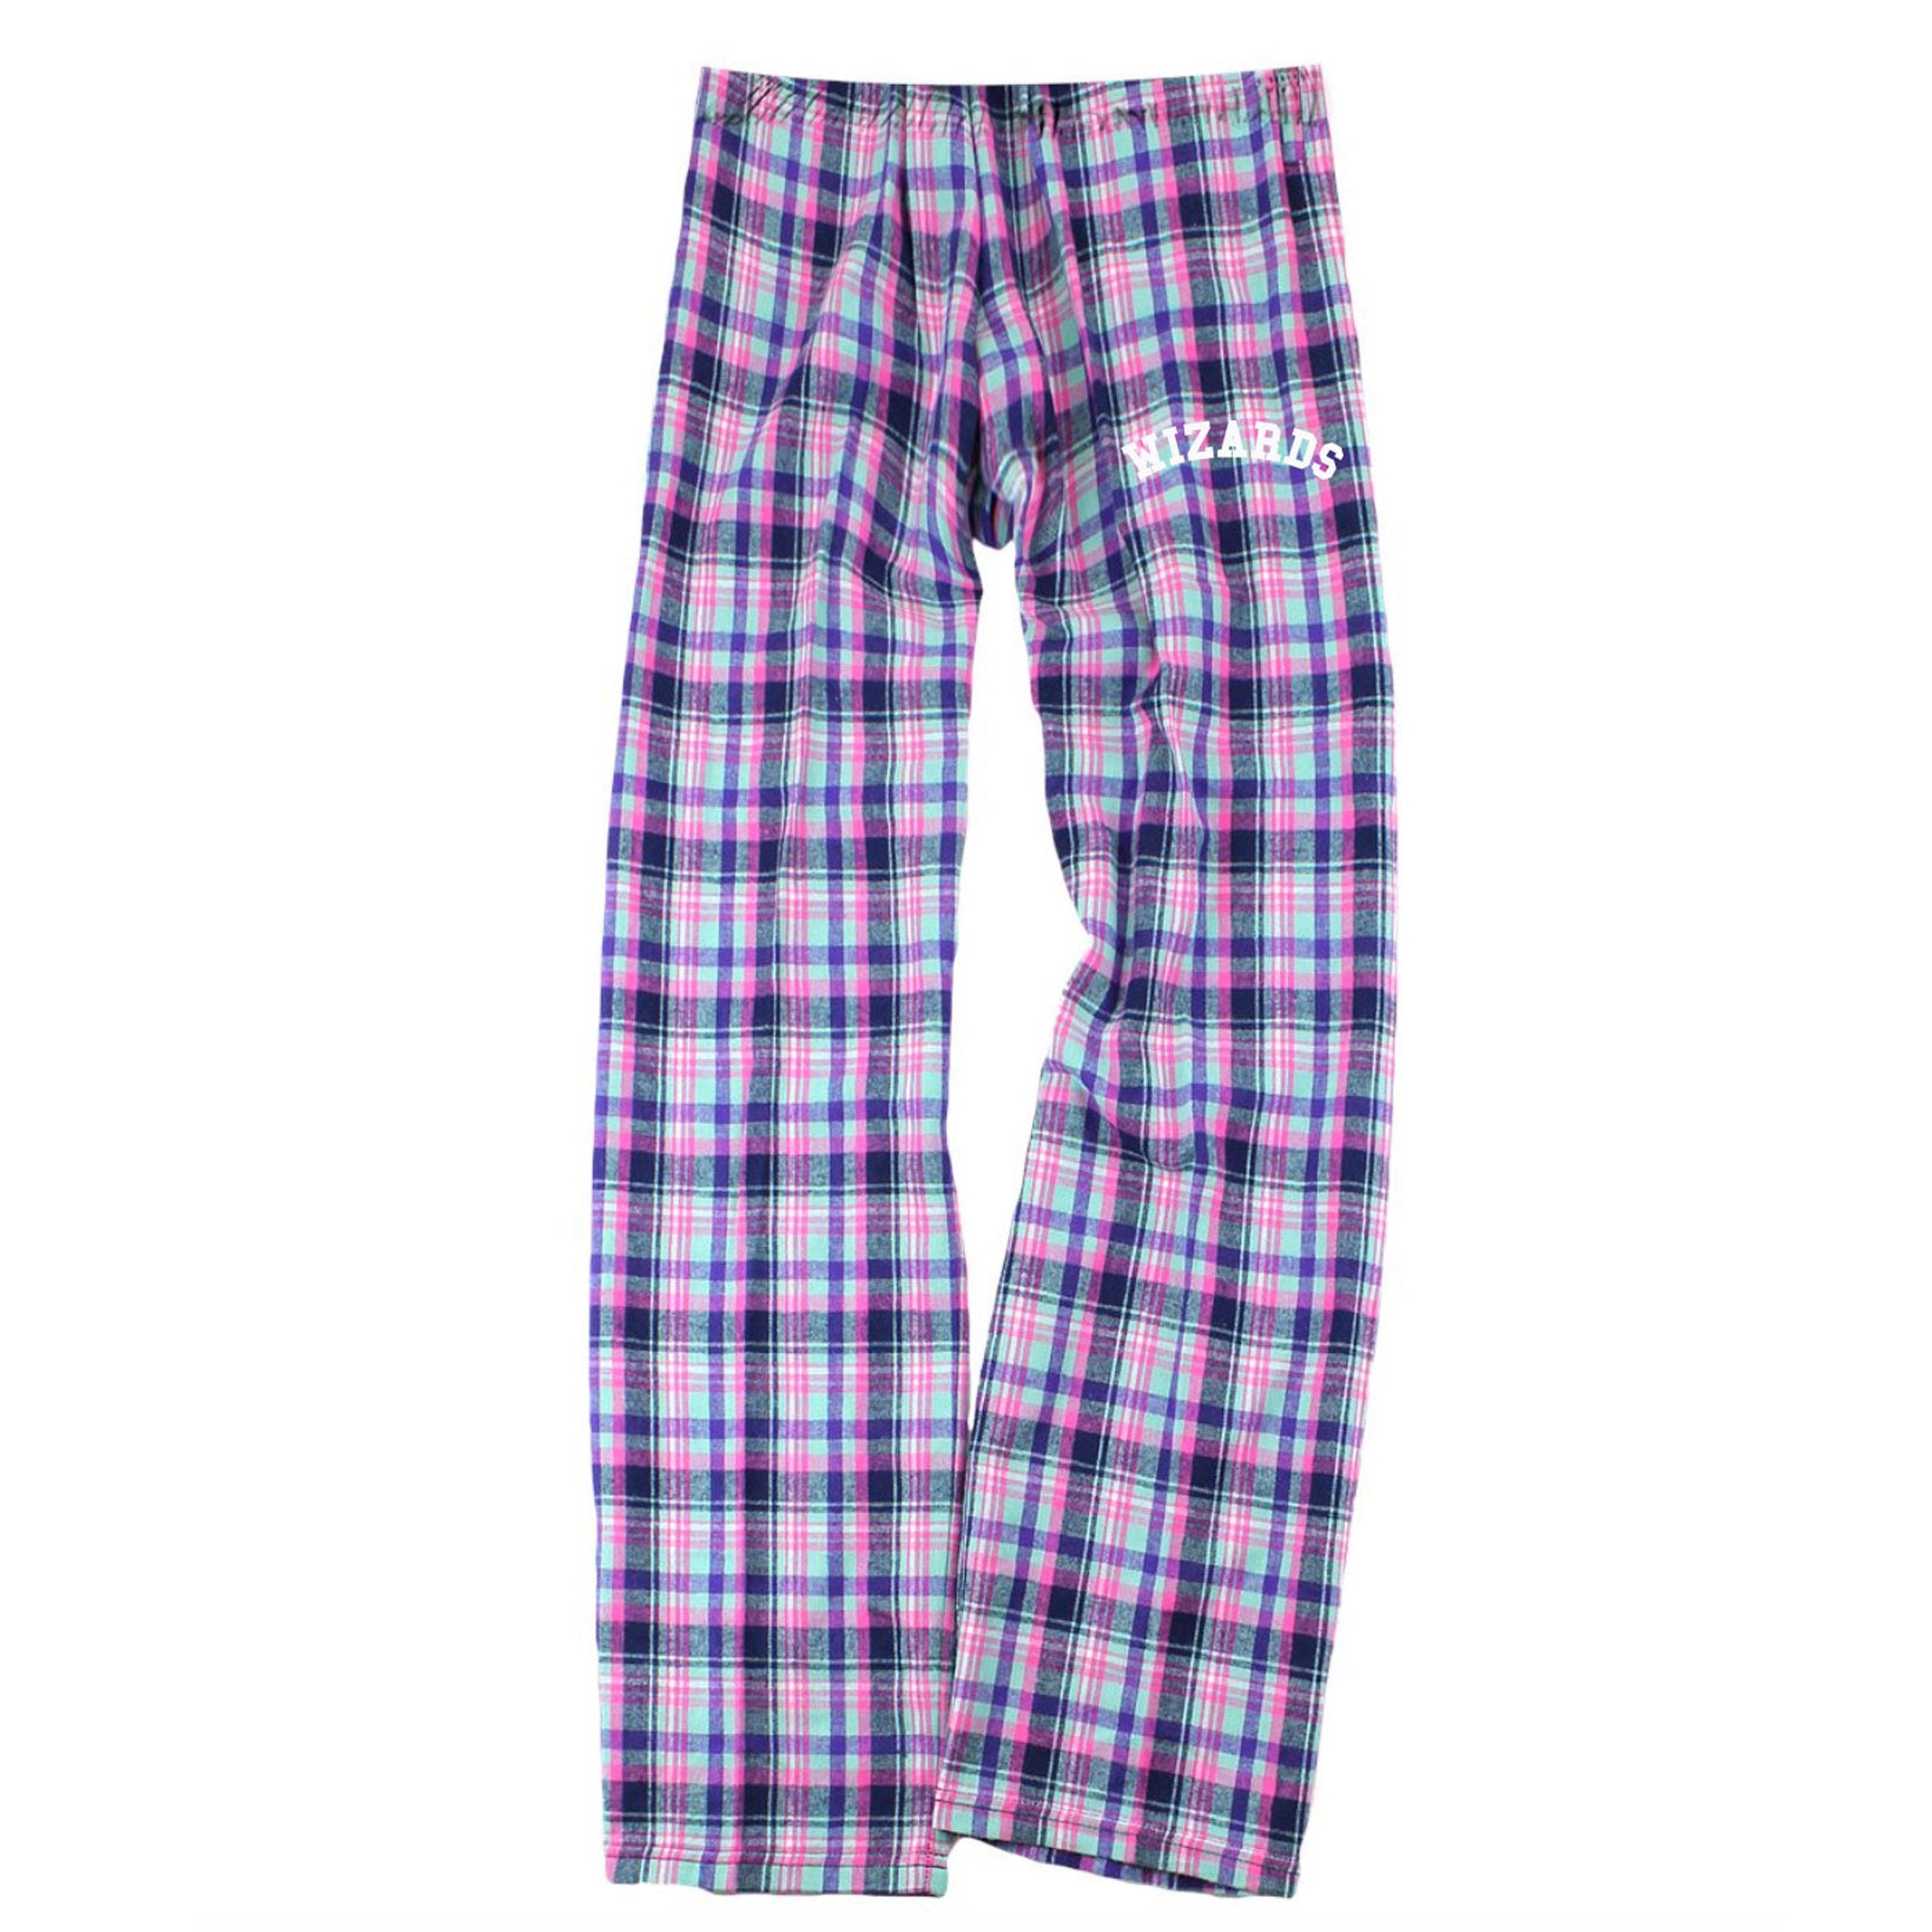 Washington Pajama Pants - Malibu Plaid